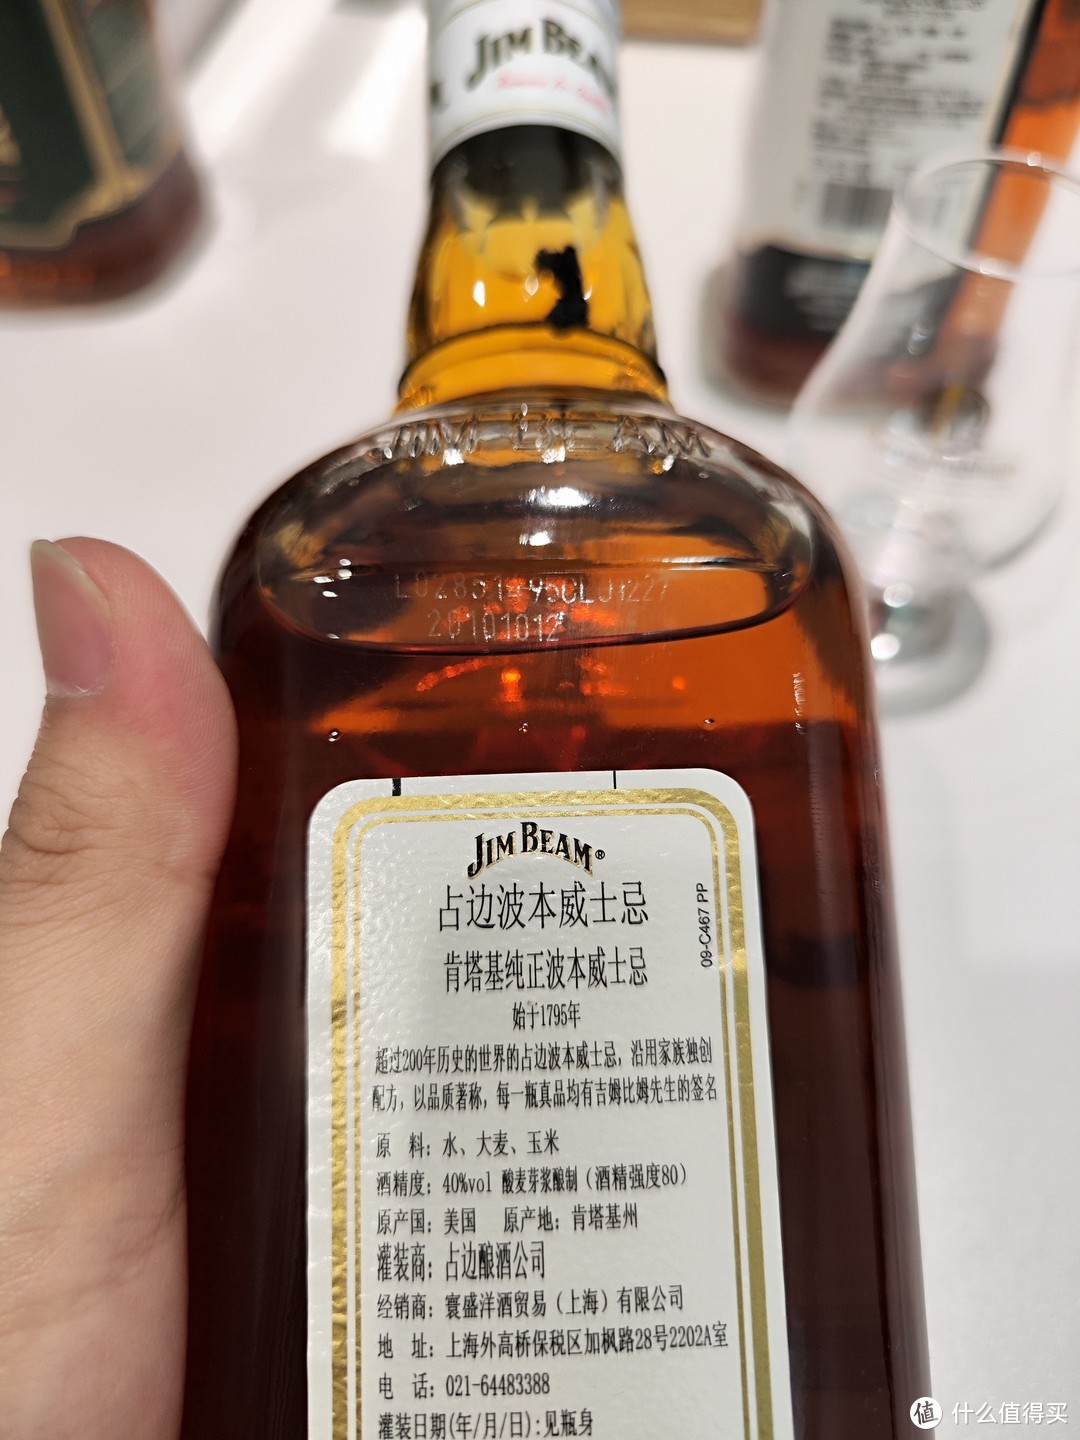 便宜的威士忌不同年代装瓶真的有区别吗